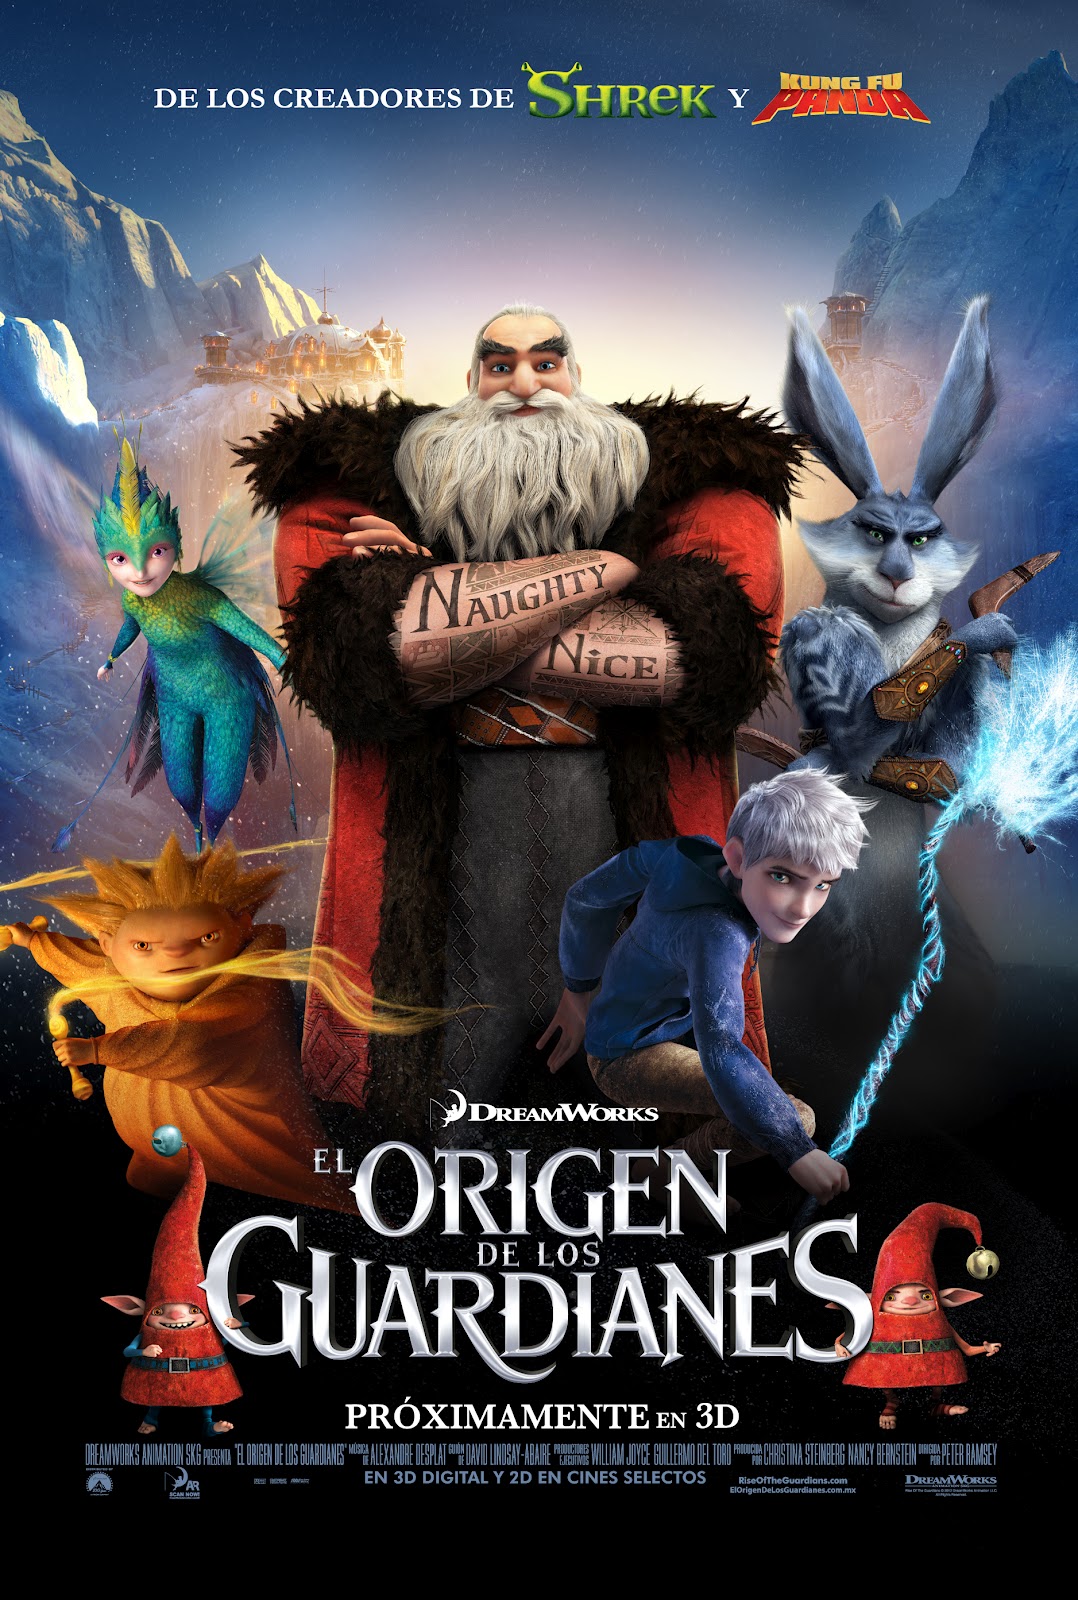 Especial: Personajes de El Origen de los Guardianes - Cine 